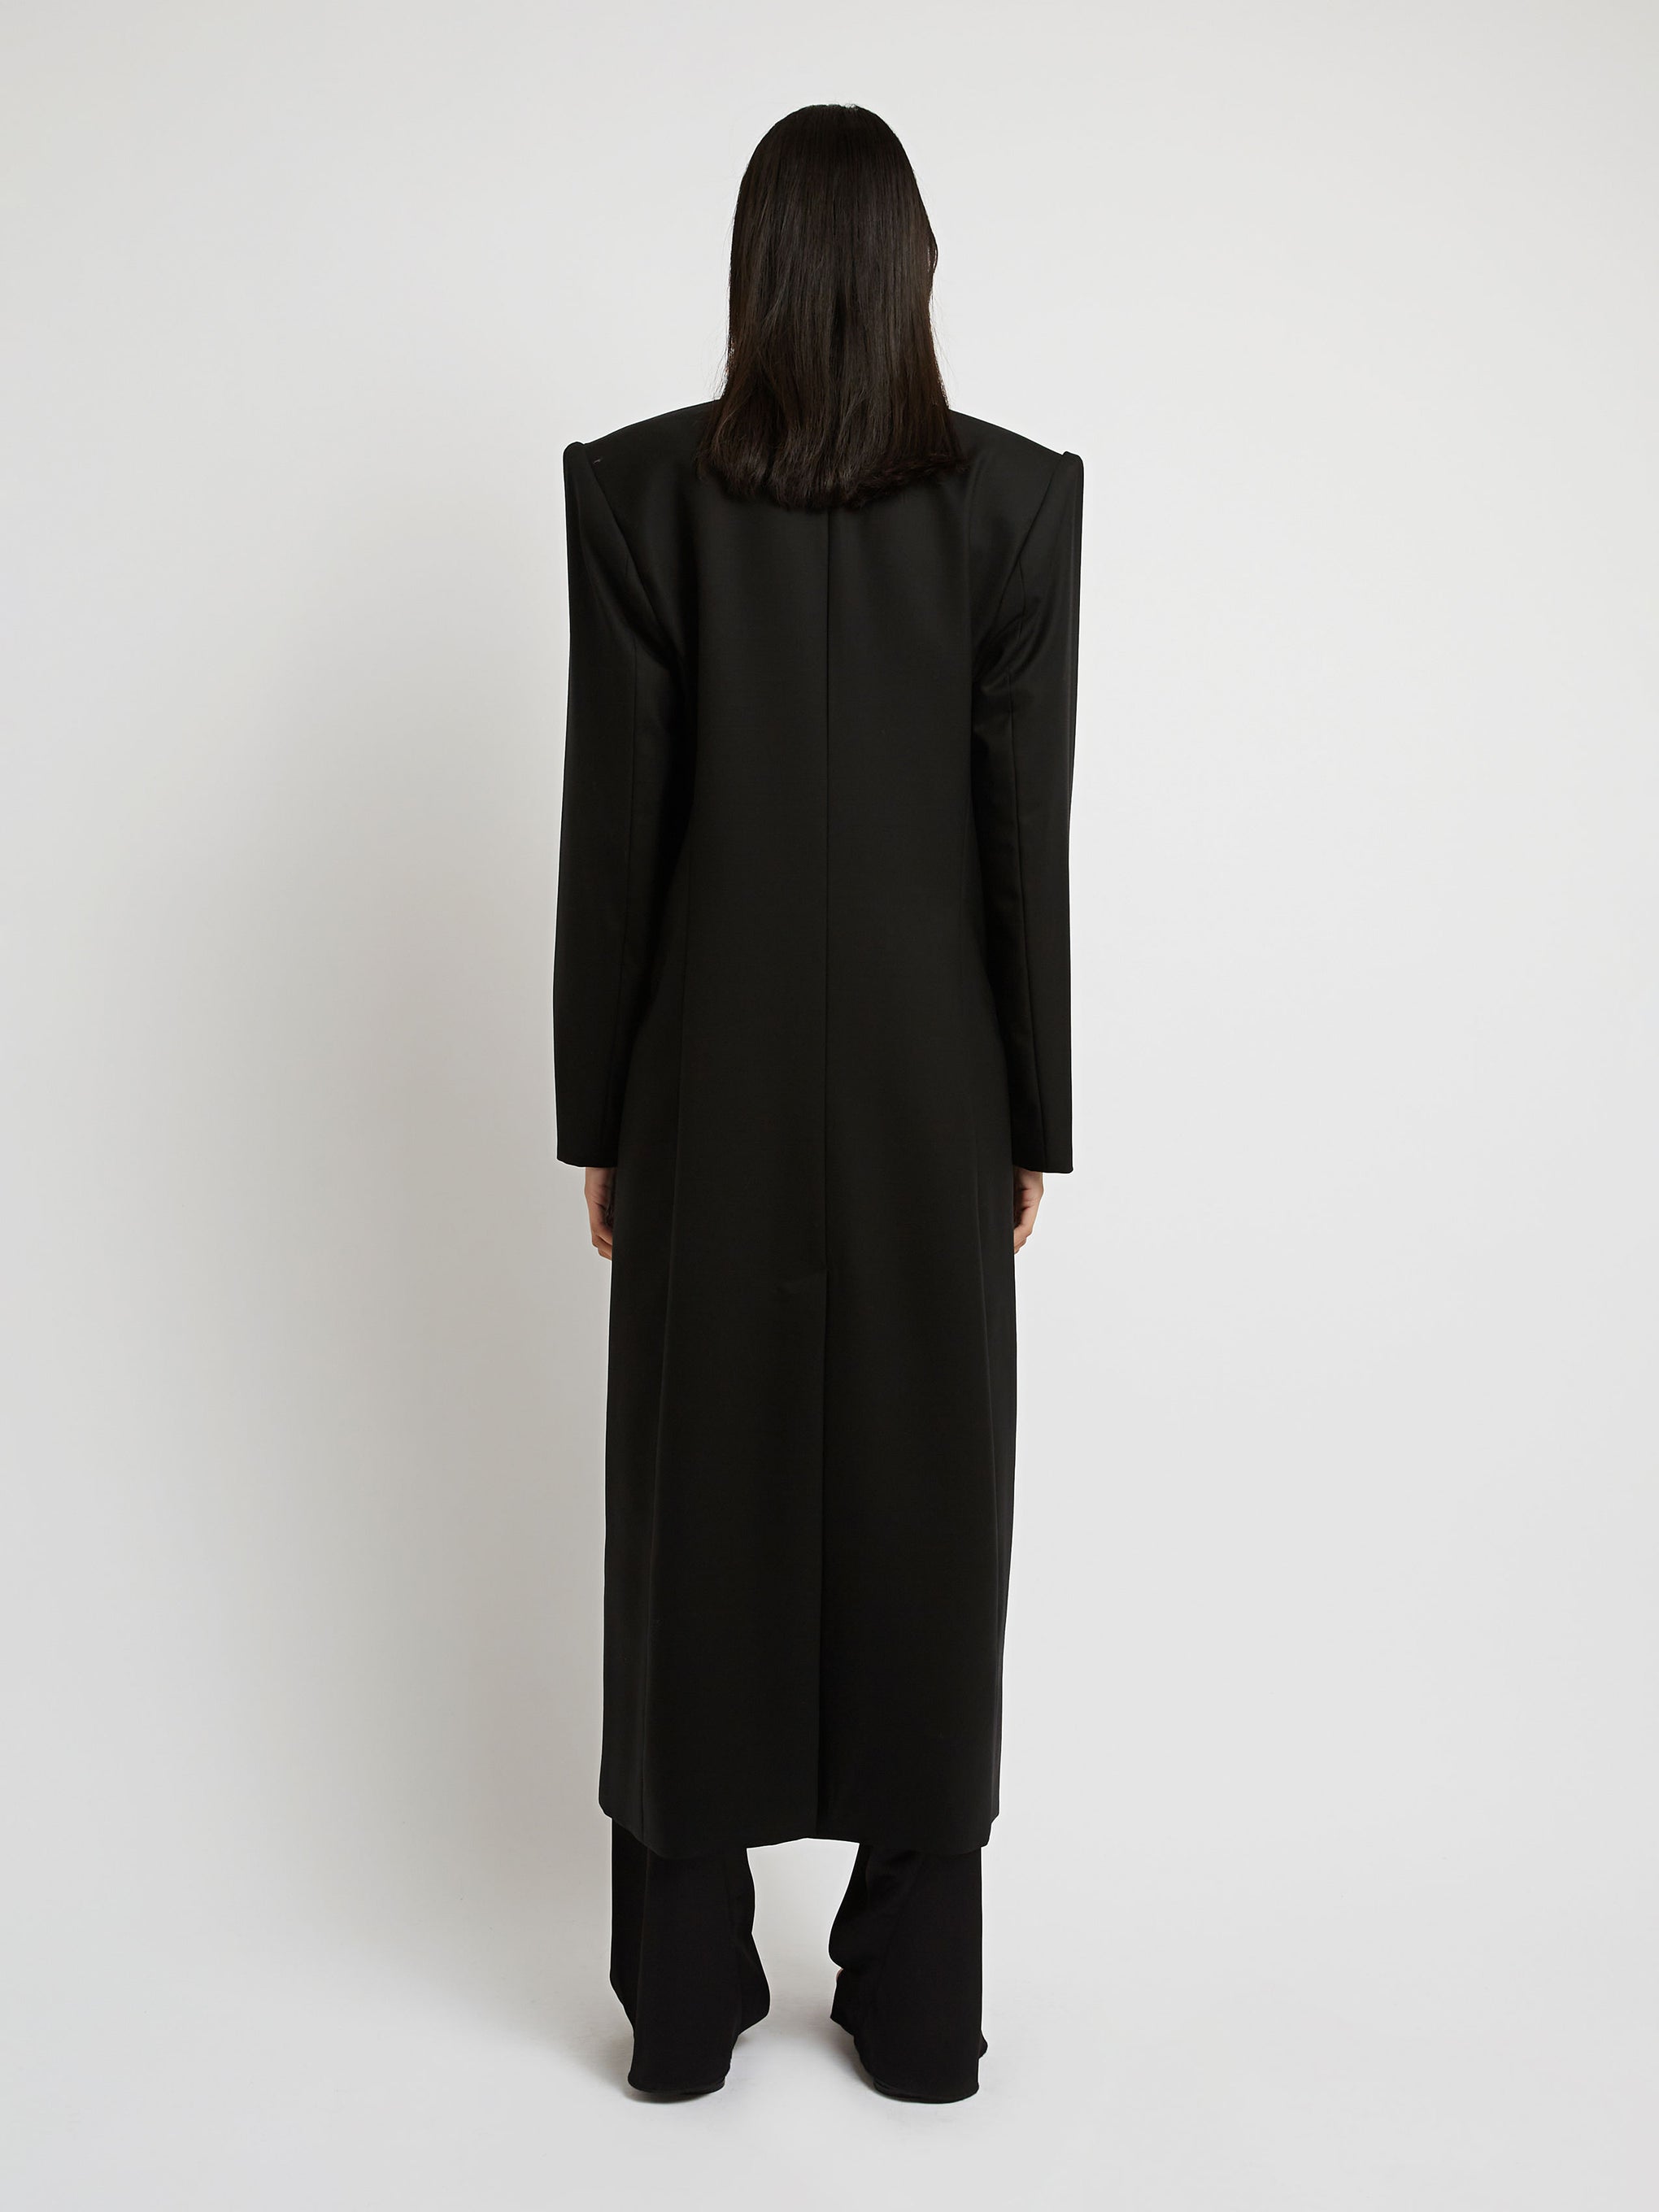 CHRISTOPHER ESBER Apex Sleeved Coat in Black | TNT The New Trend